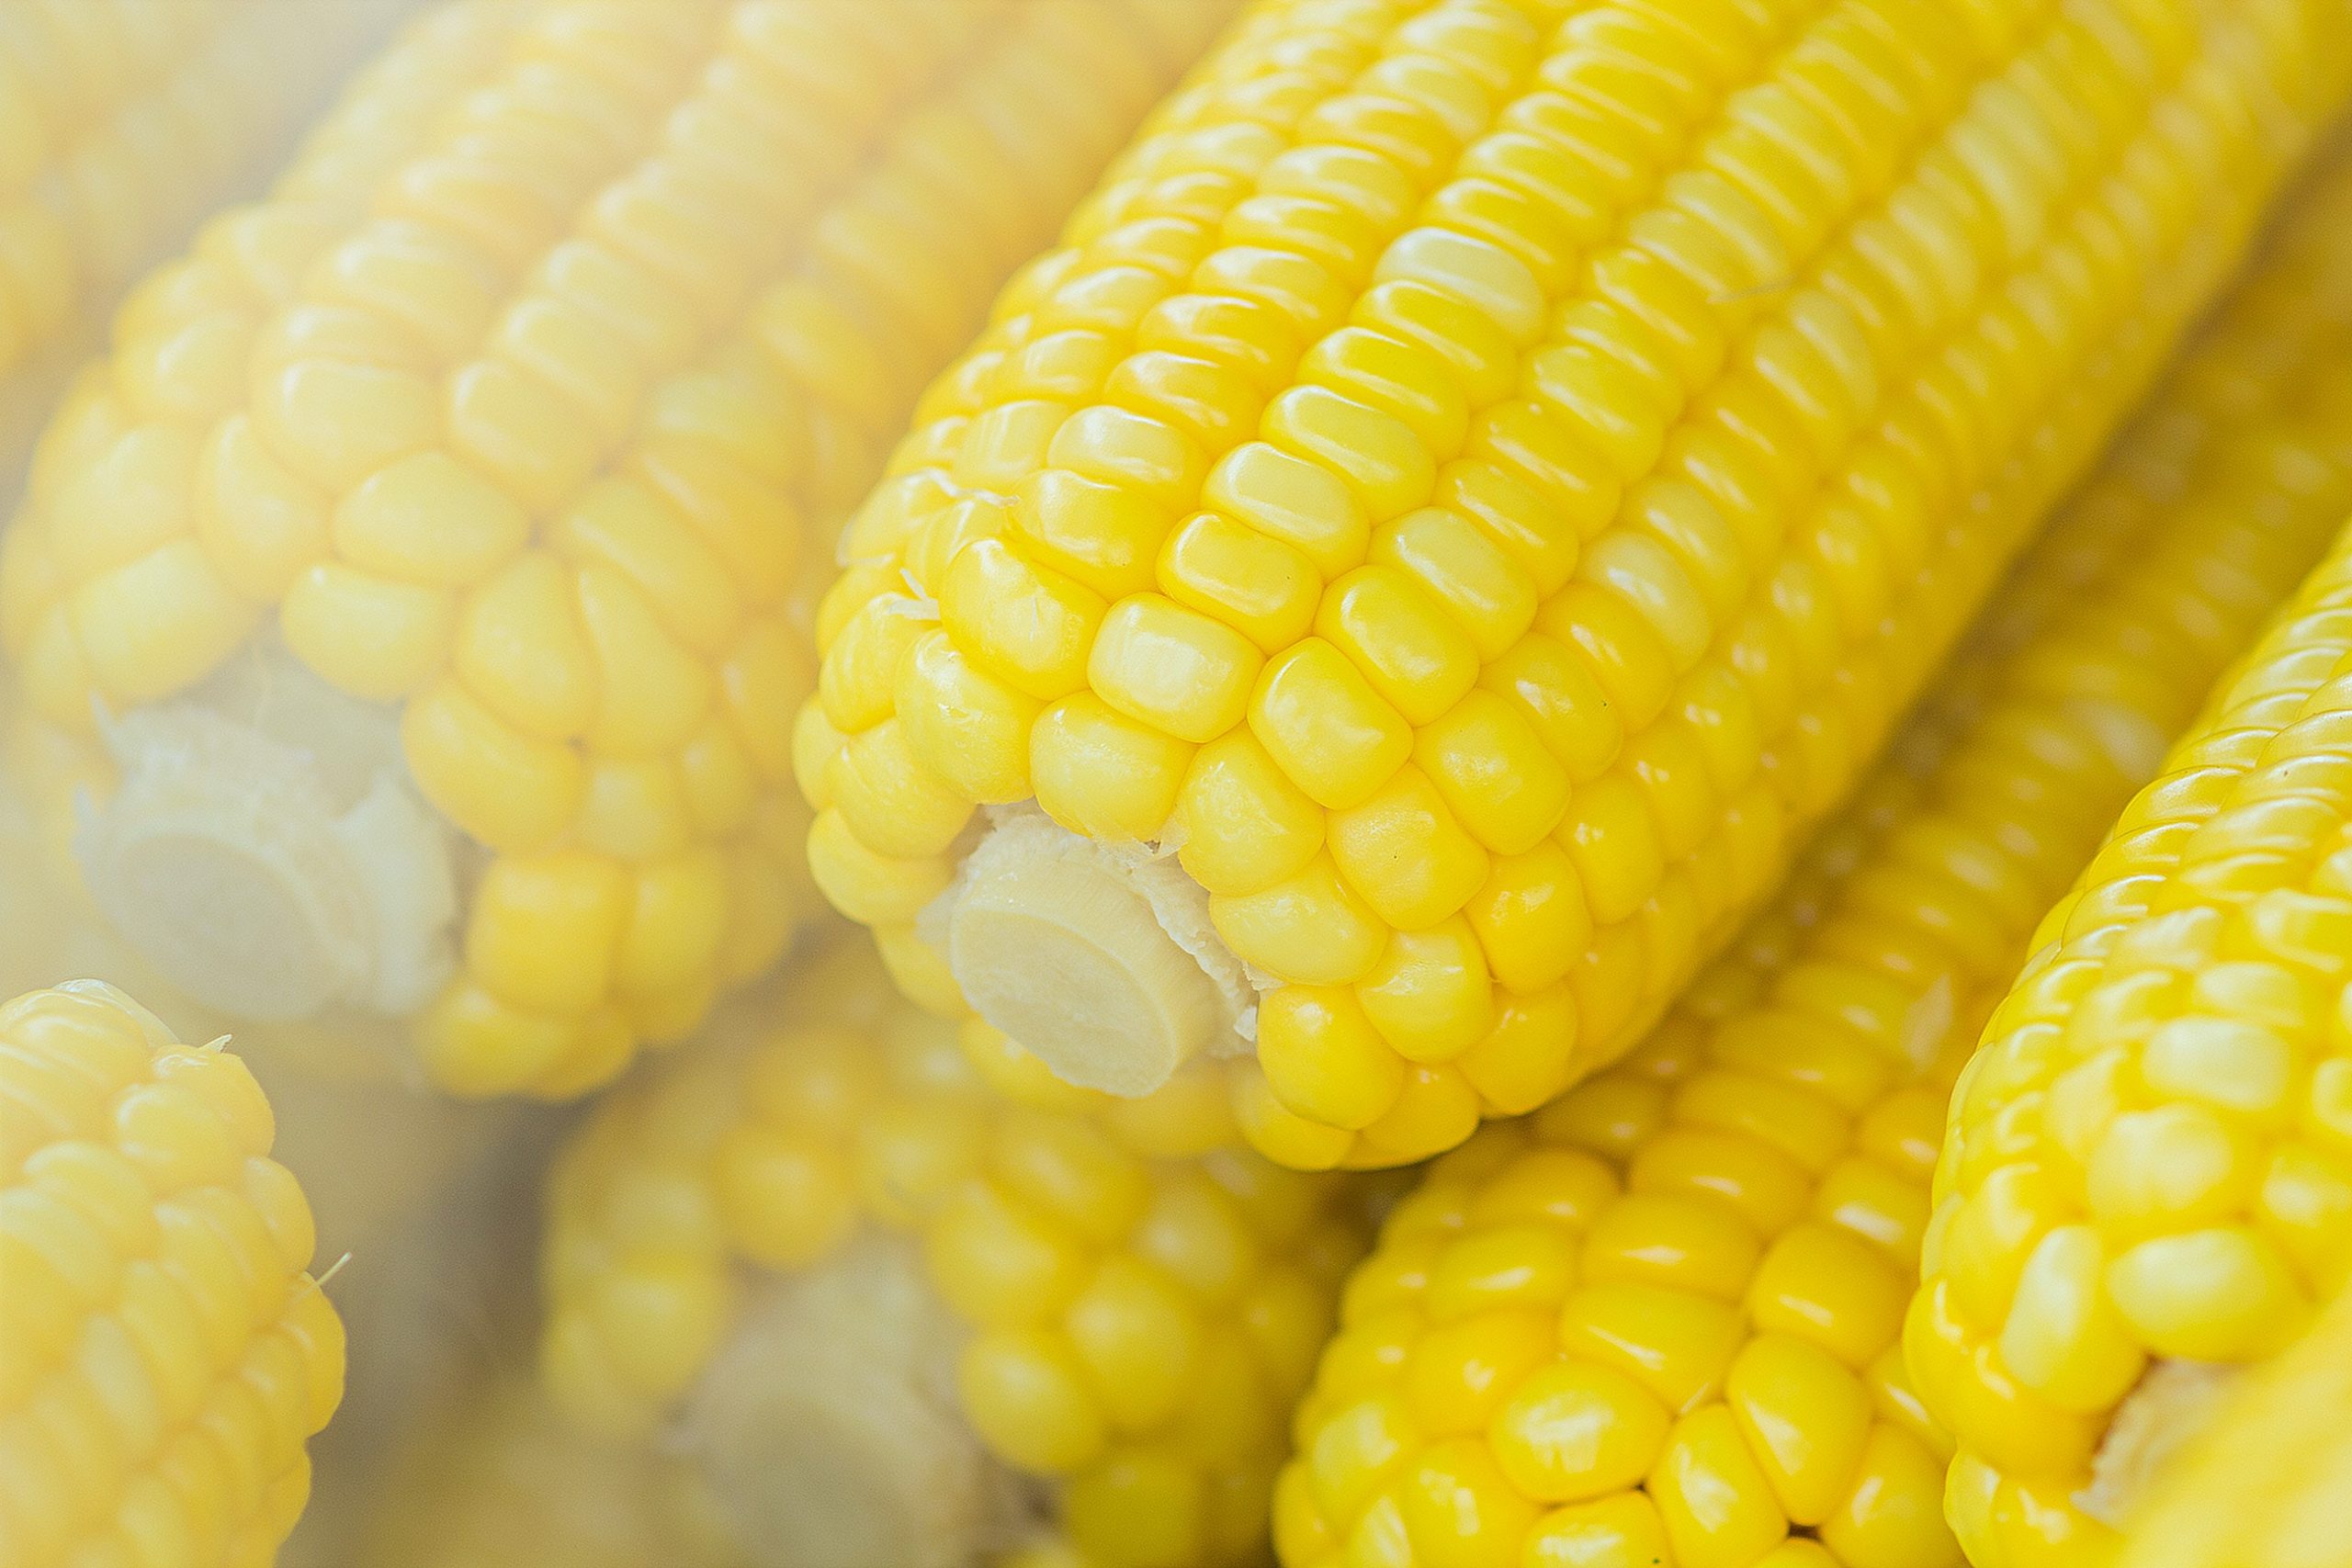 Прежде чем есть кукурузу, вы должны узнать о некоторых предостережениях врачей